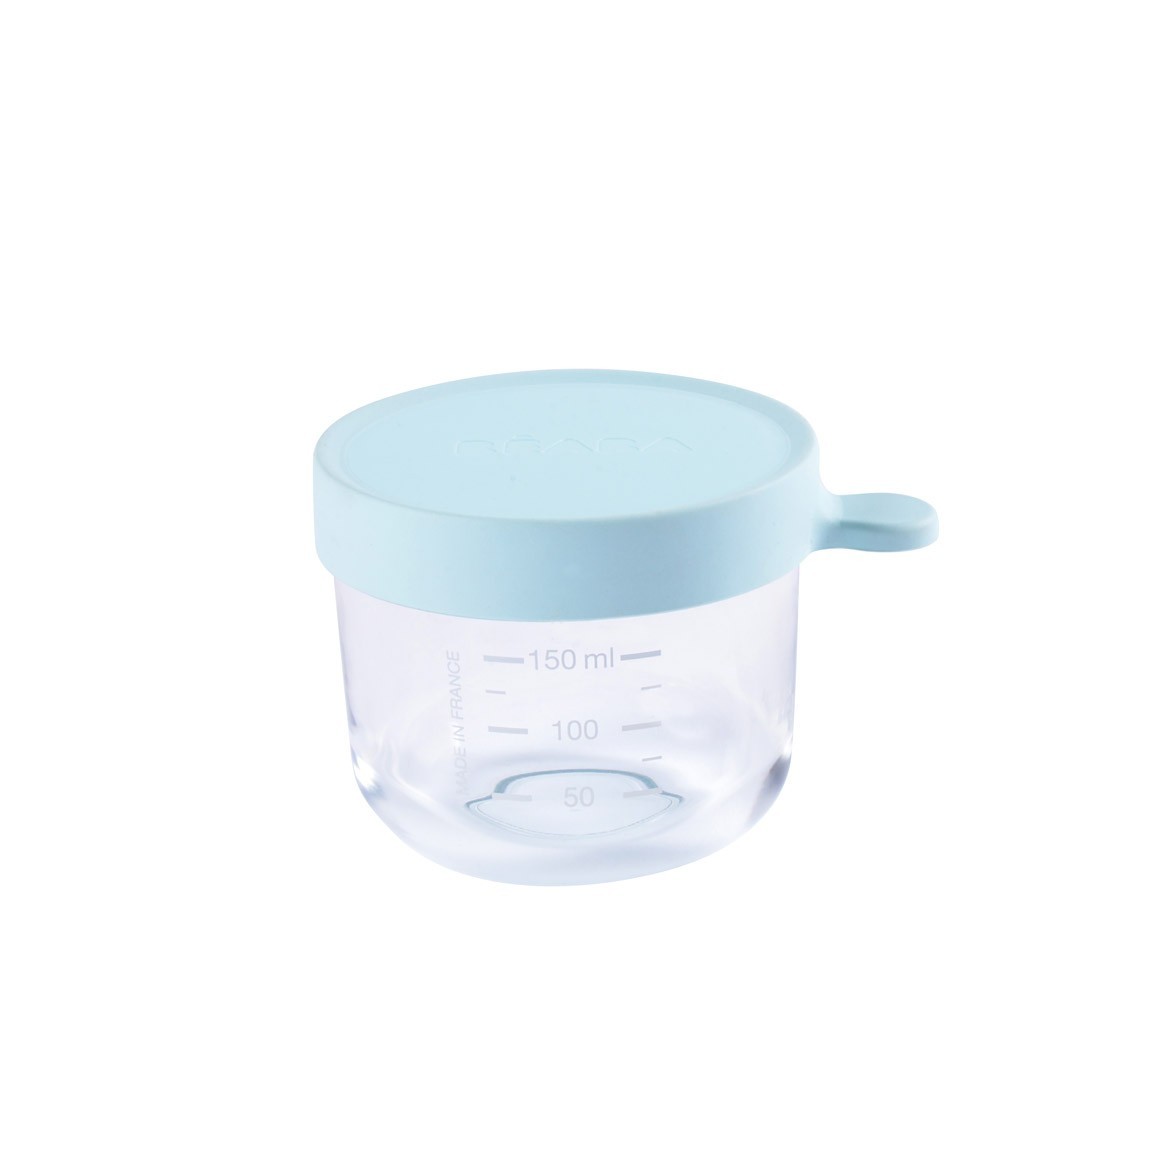 กระปุกแก้ว ฝาสูญญากาศ 150 มิลลิลิตร - สีฟ้าอ่อน conservation jar in superior quality glass 150 ml - LIGHT BLUE